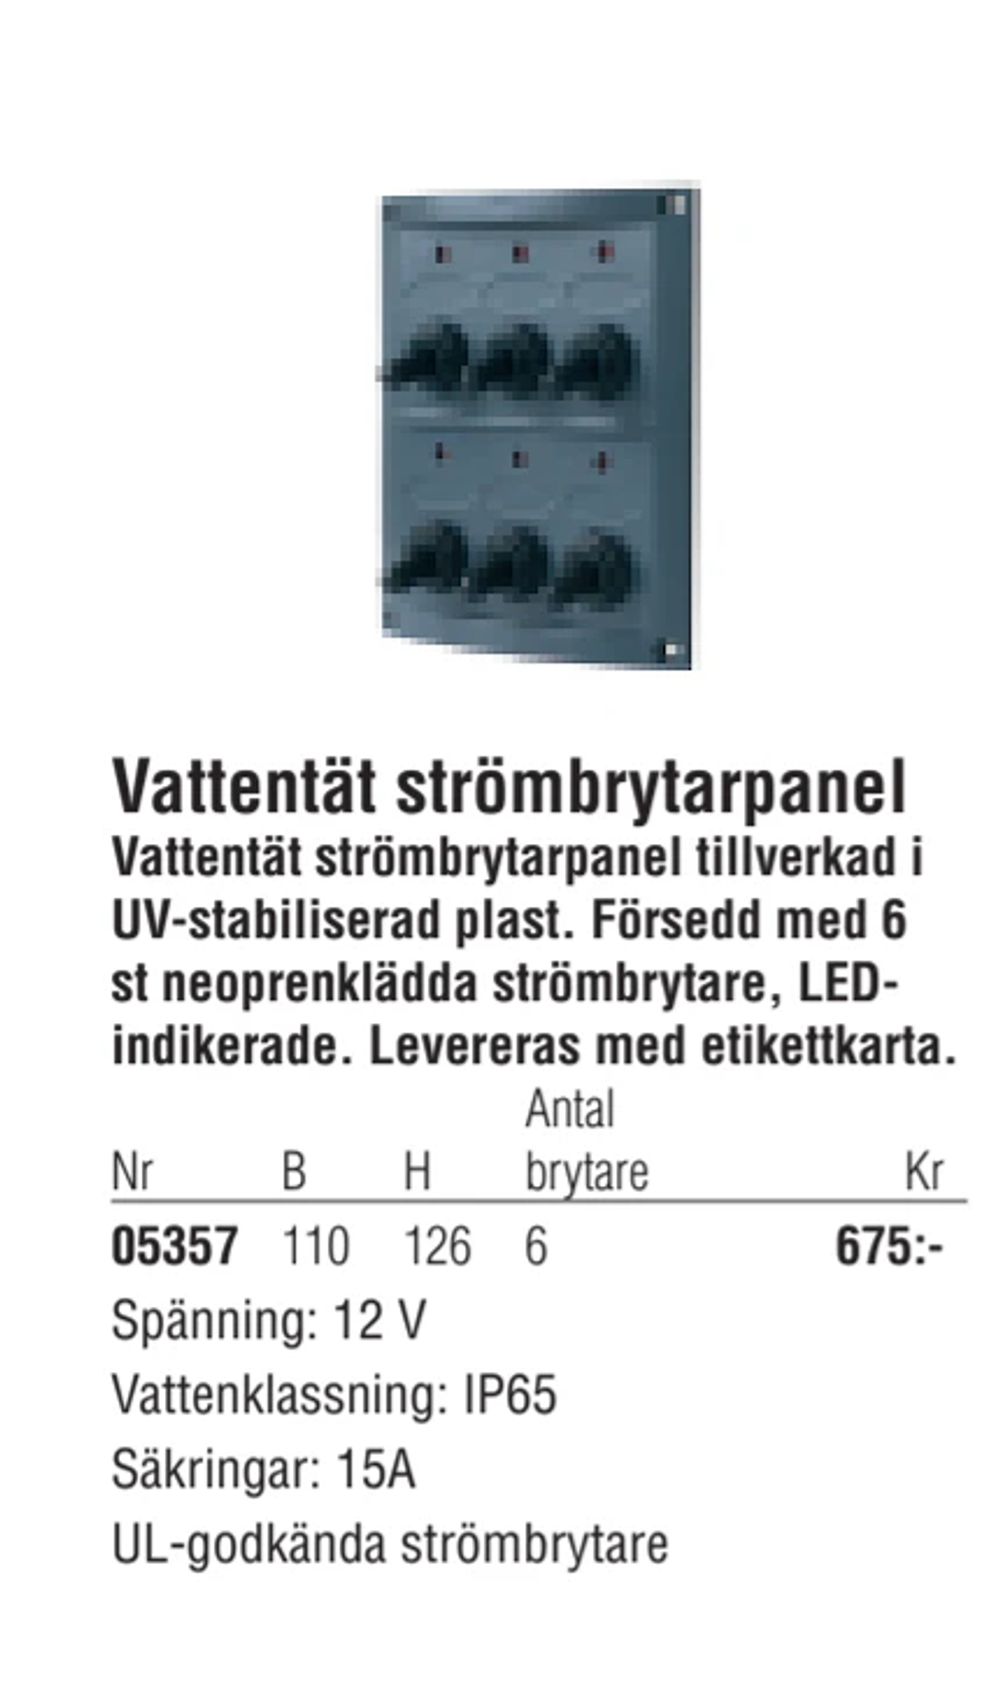 Erbjudanden på Vattentät strömbrytarpanel från Erlandsons Brygga för 675 kr